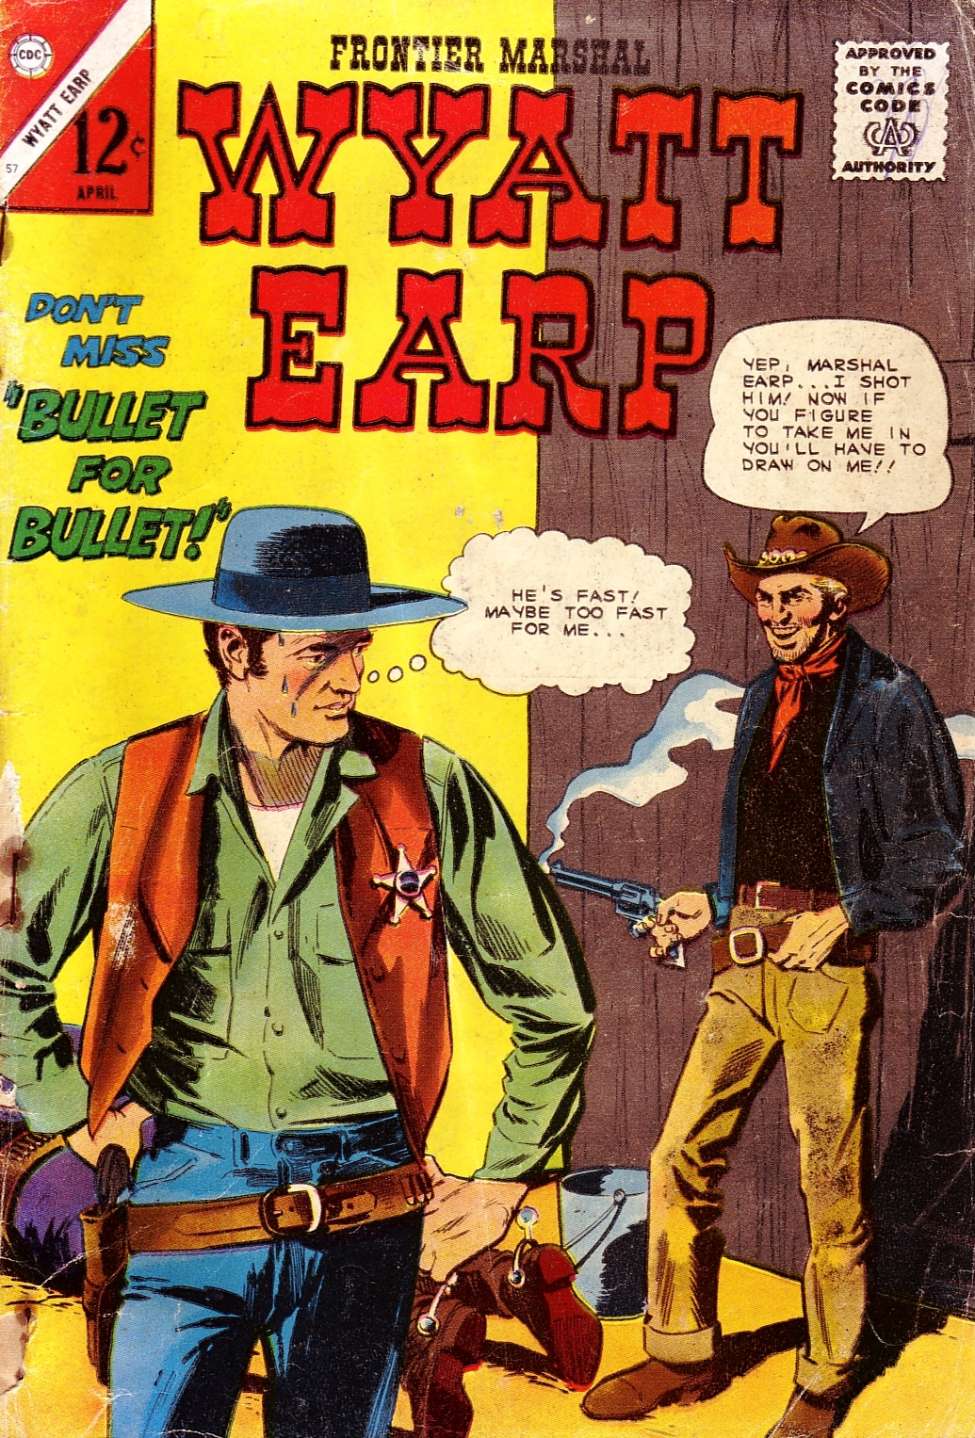 Book Cover For Wyatt Earp Frontier Marshal 57